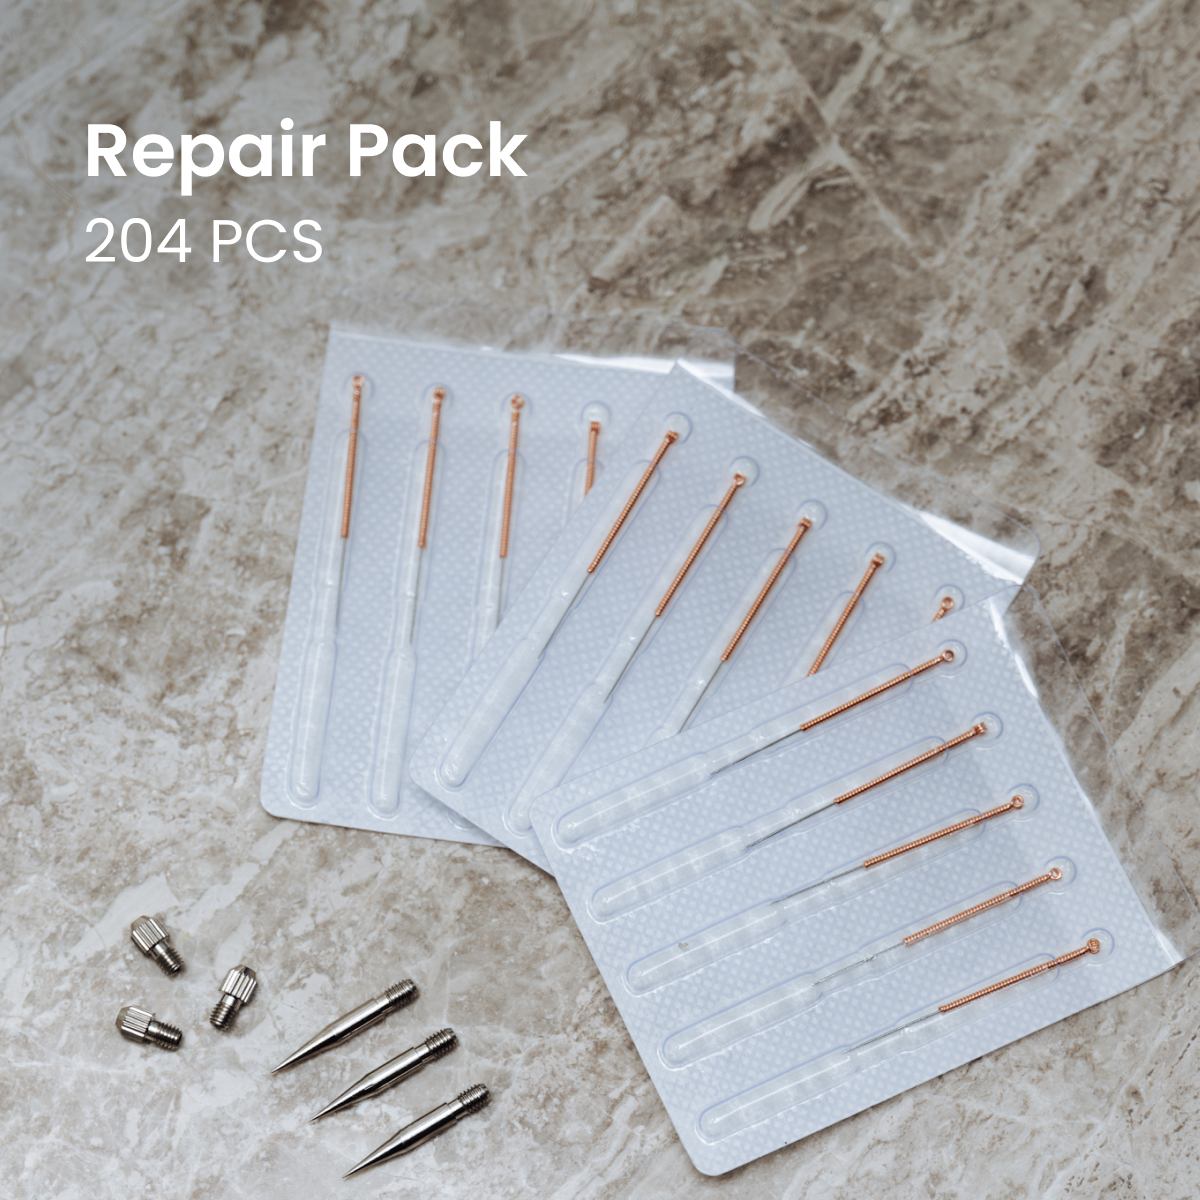 Offre groupée : Kit Beauty Spa (5x) + Pack de réparation (204 pièces) + Guide gratuit